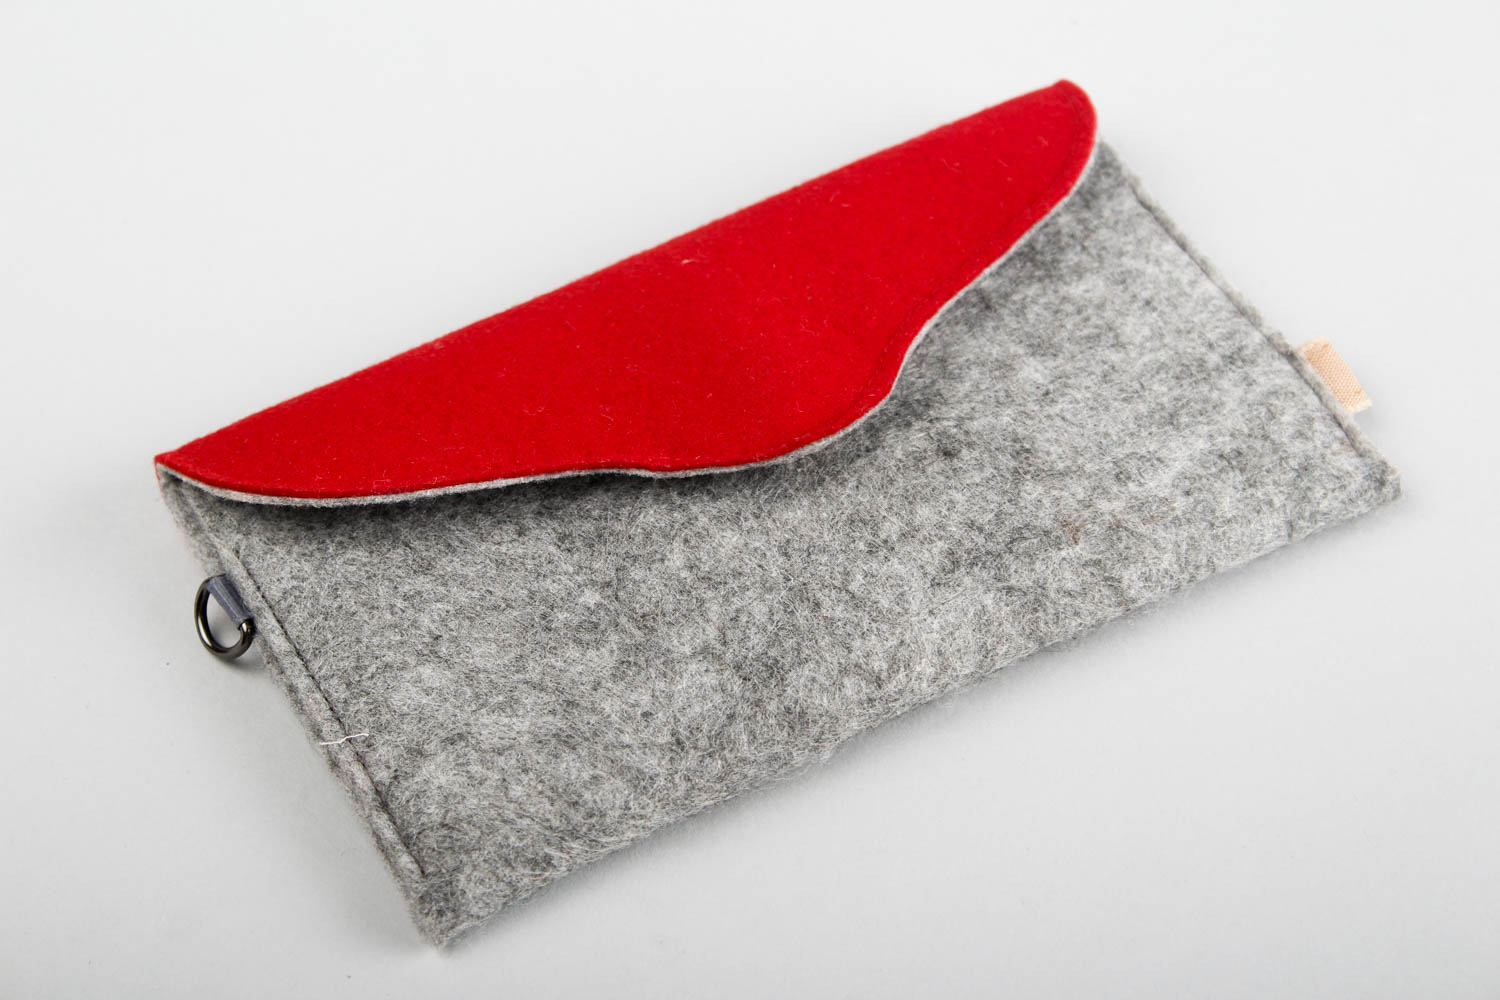 Stylish wallet handmade woolen wallet leather accessories designer purse ideas photo 1